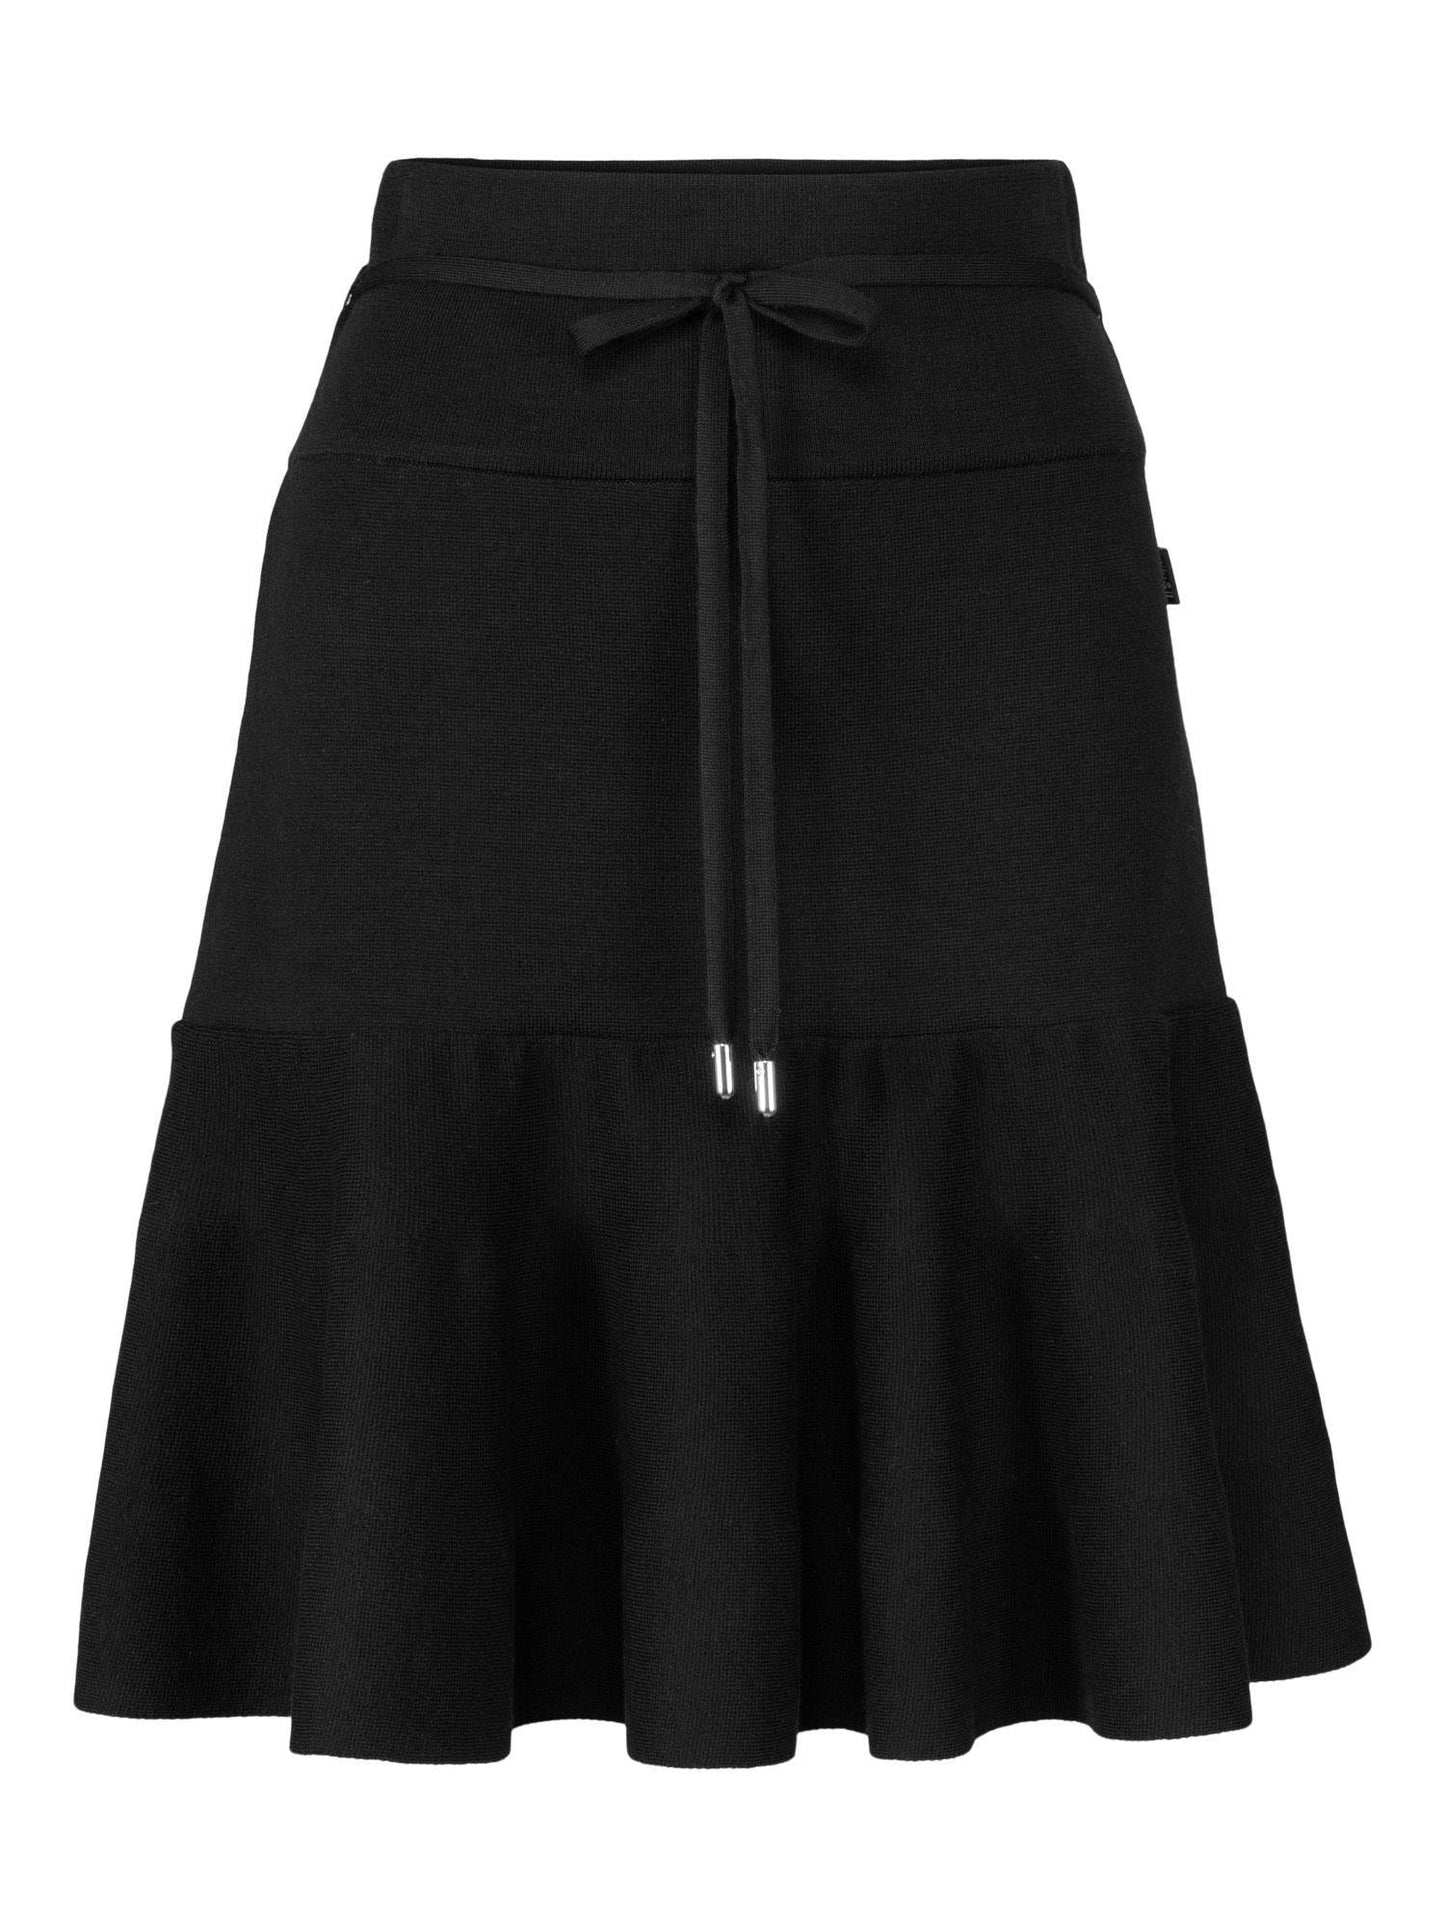 Mali Merino Skirt Black - No22 Damplassen